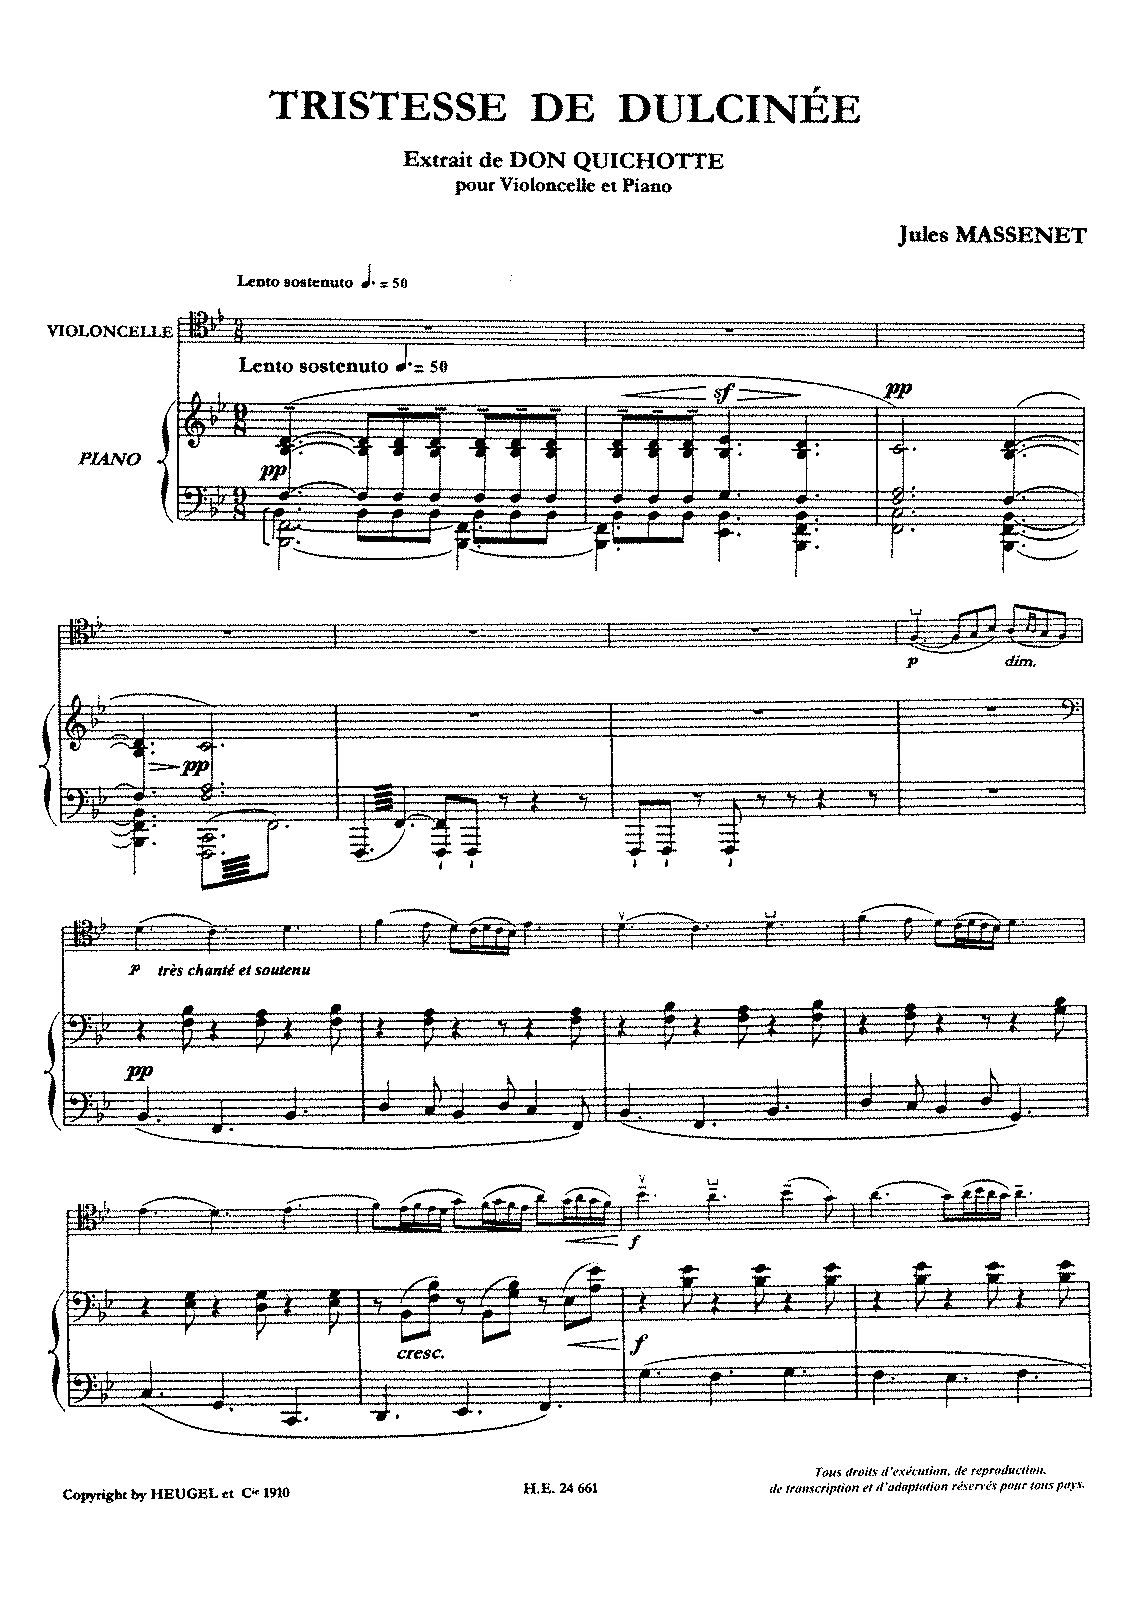 Don quichotte a dulcinee piano pdf